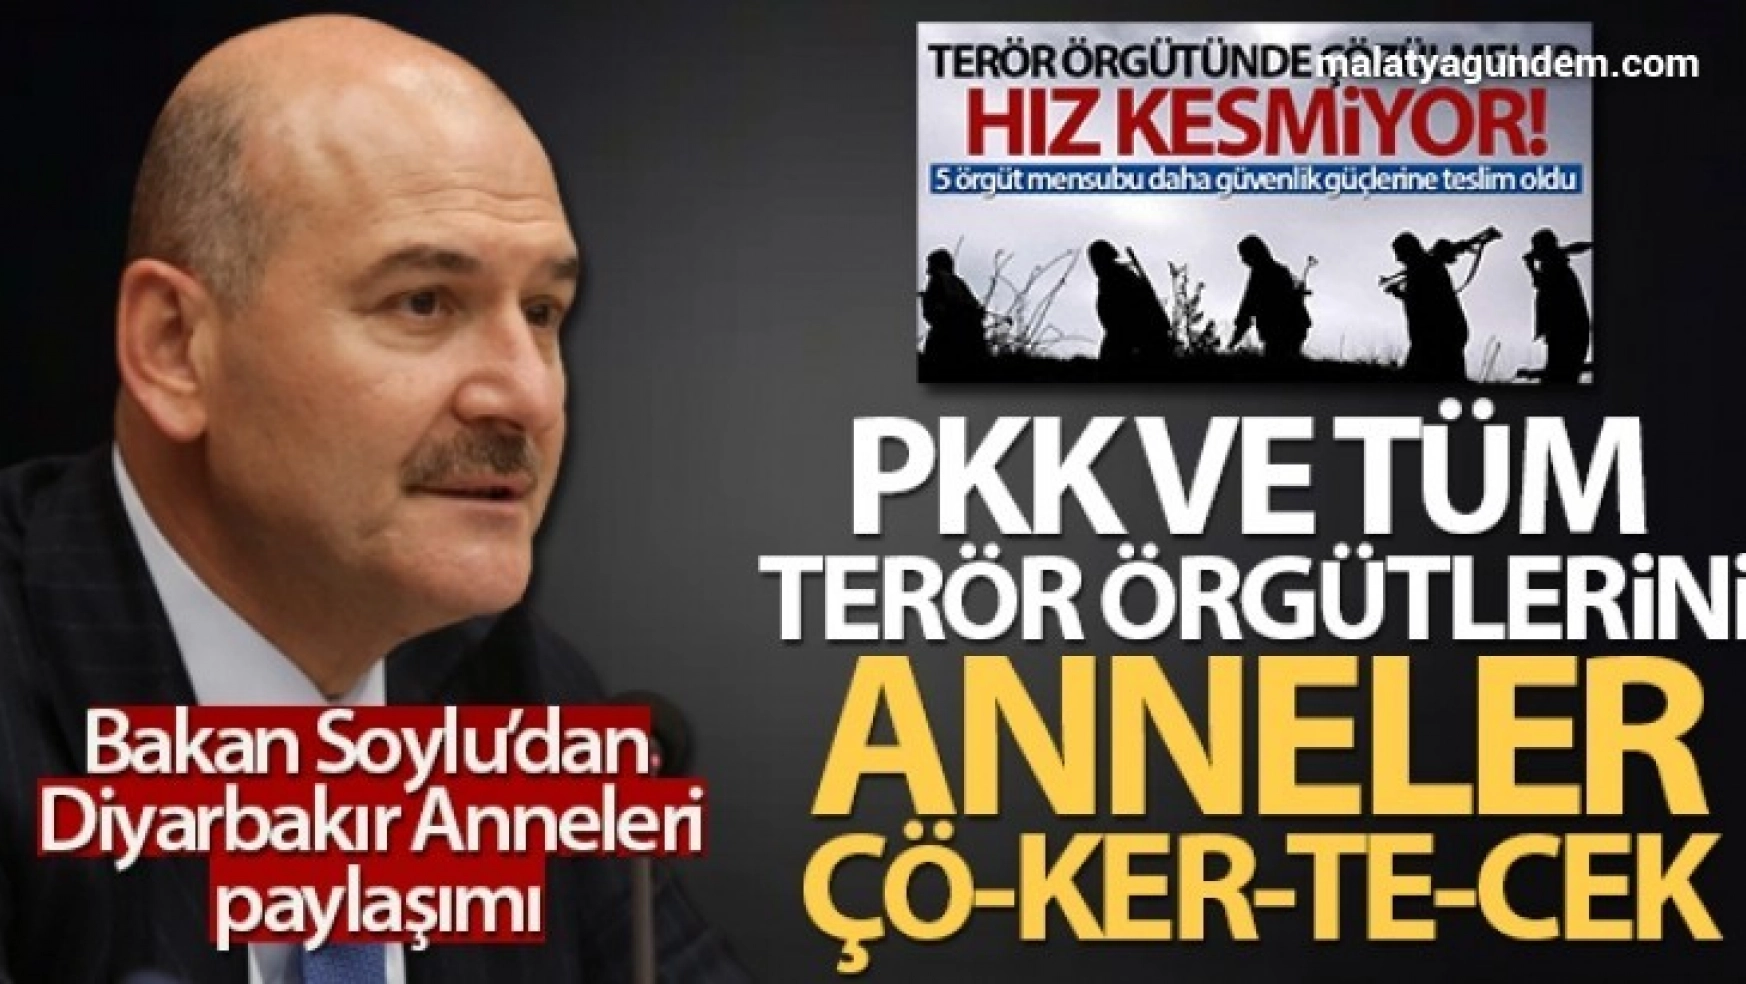 Bakan Soylu: 'PKK ve tüm terör örgütlerini anneler ÇÖ-KER-TE-CEK'